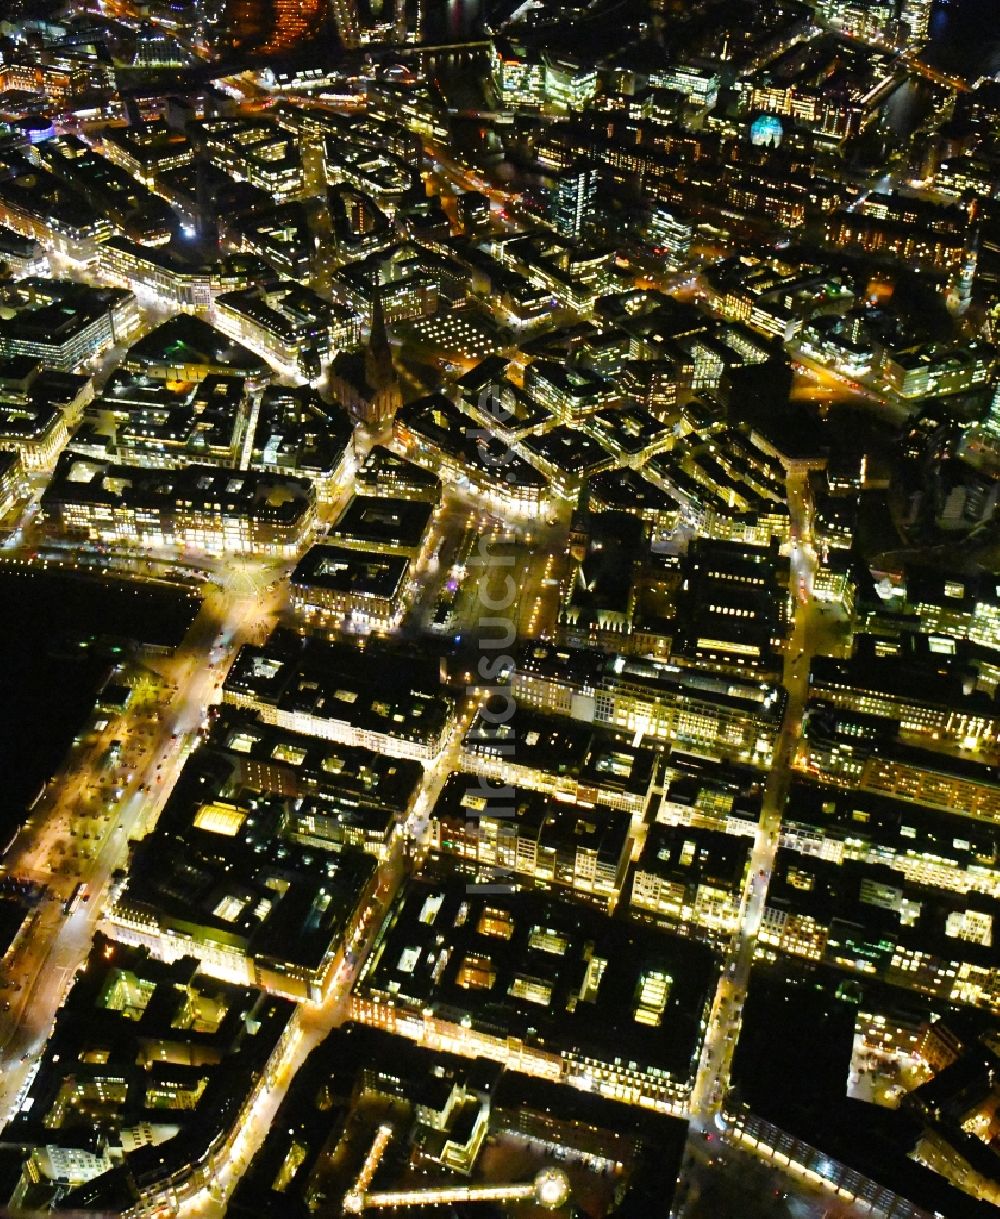 Nacht-Luftaufnahme Hamburg - Nachtluftbild Stadtansicht vom Innenstadtbereich der Altstadt in Hamburg, Deutschland